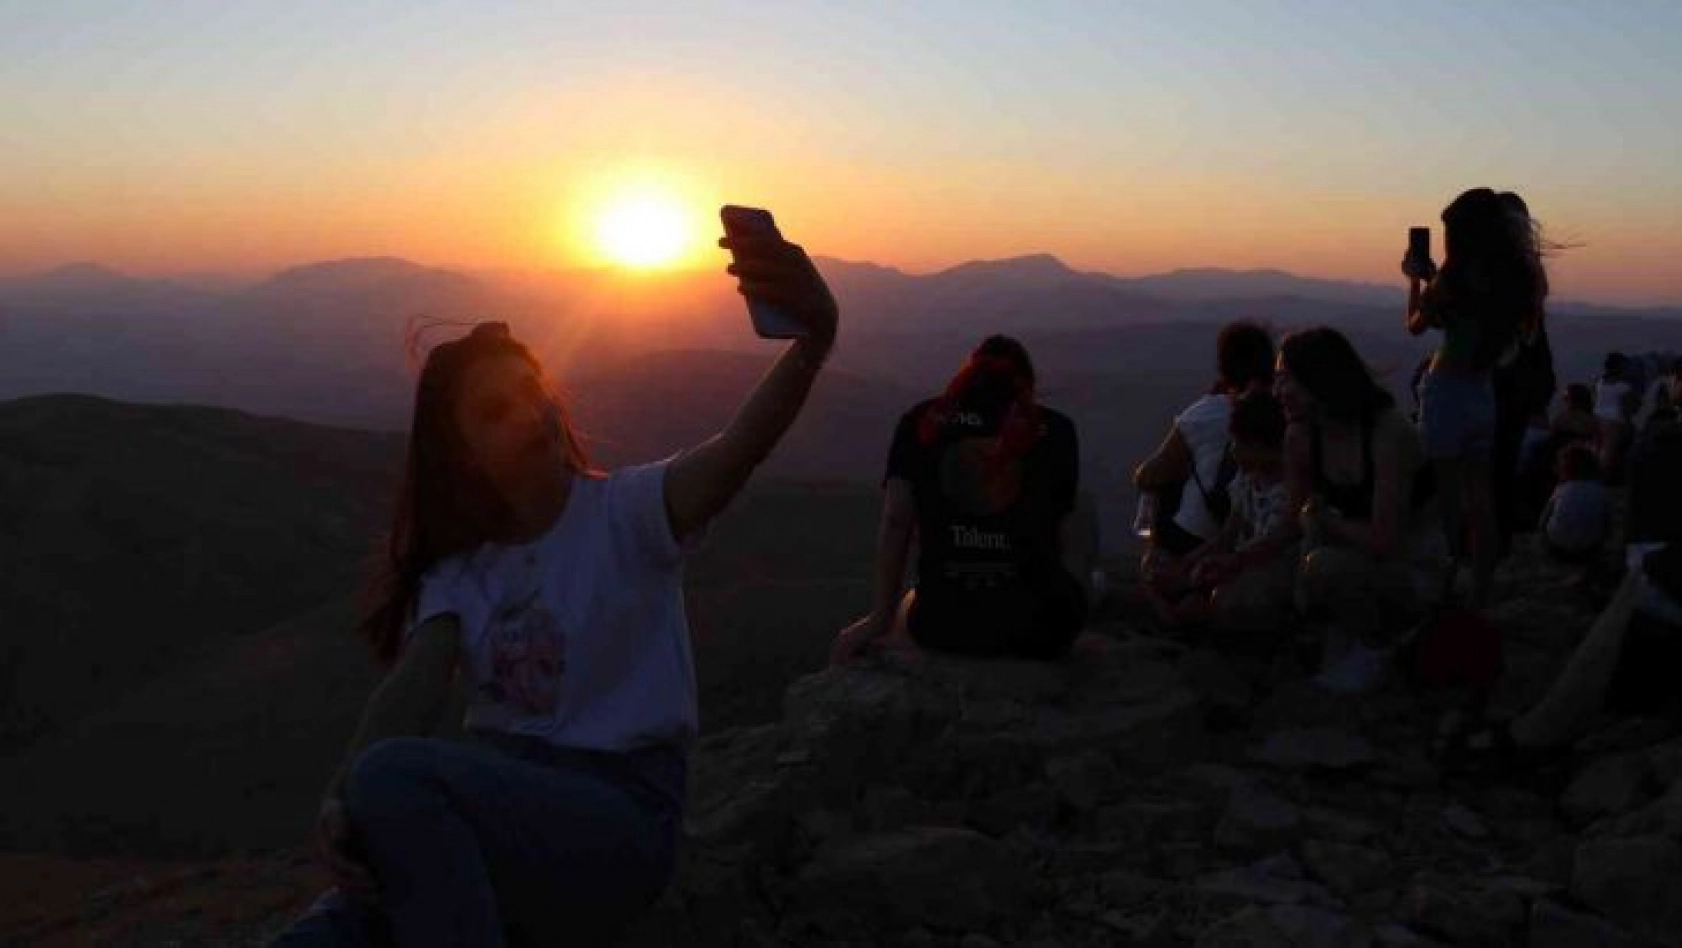 Nemrut Dağı'nda hafta sonu turist yoğunluğu yaşandı